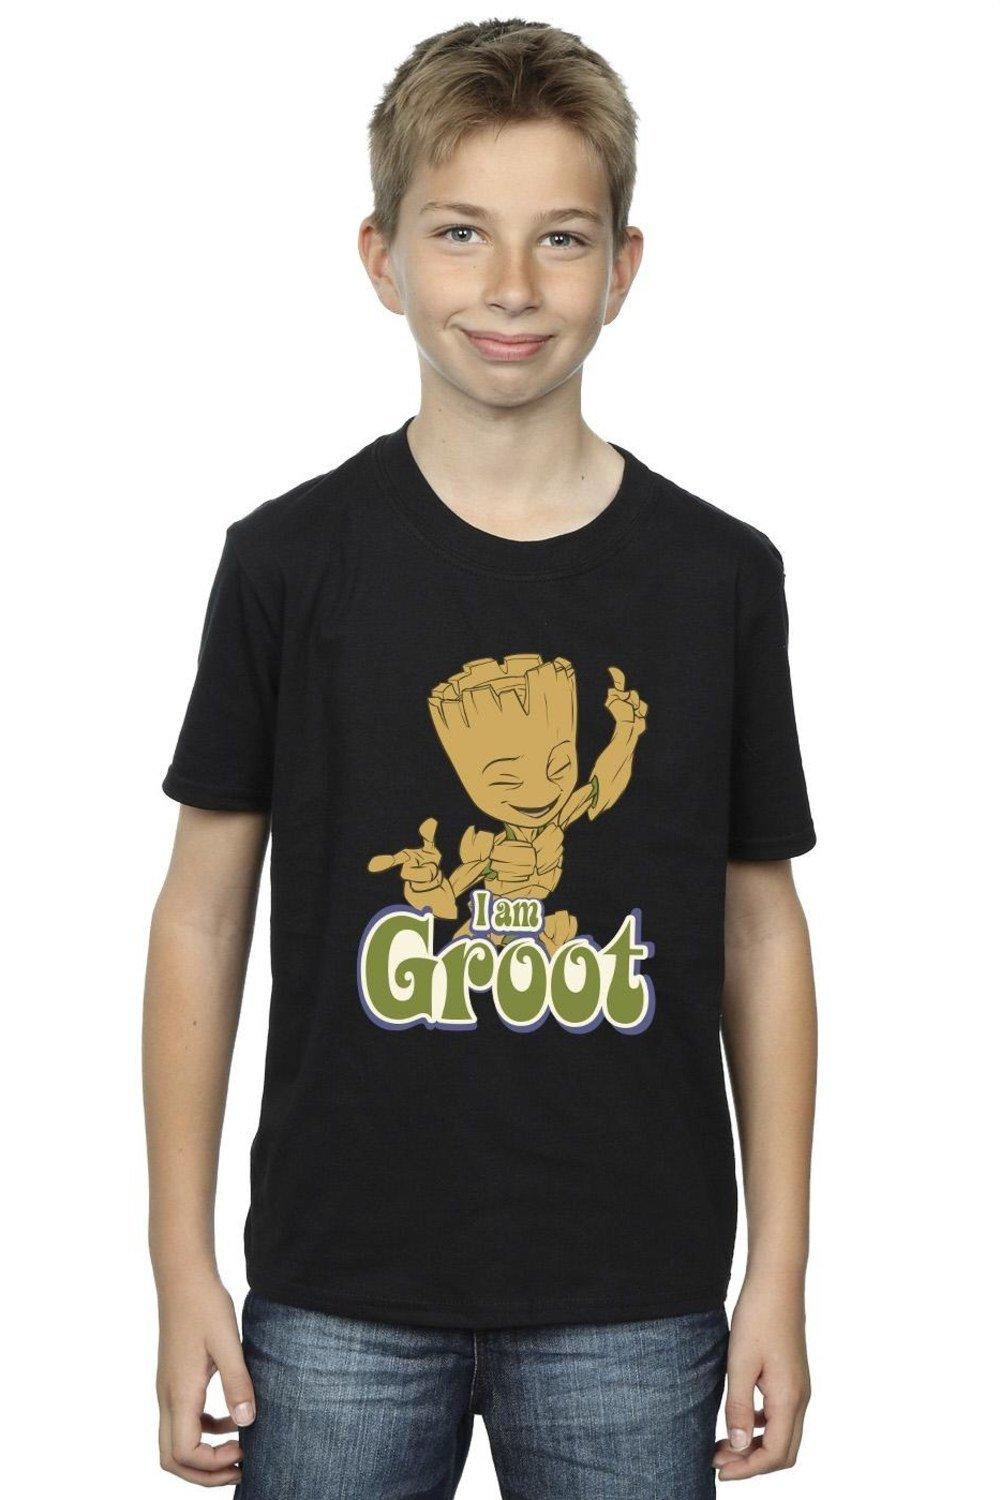 Groot Dancing T-Shirt